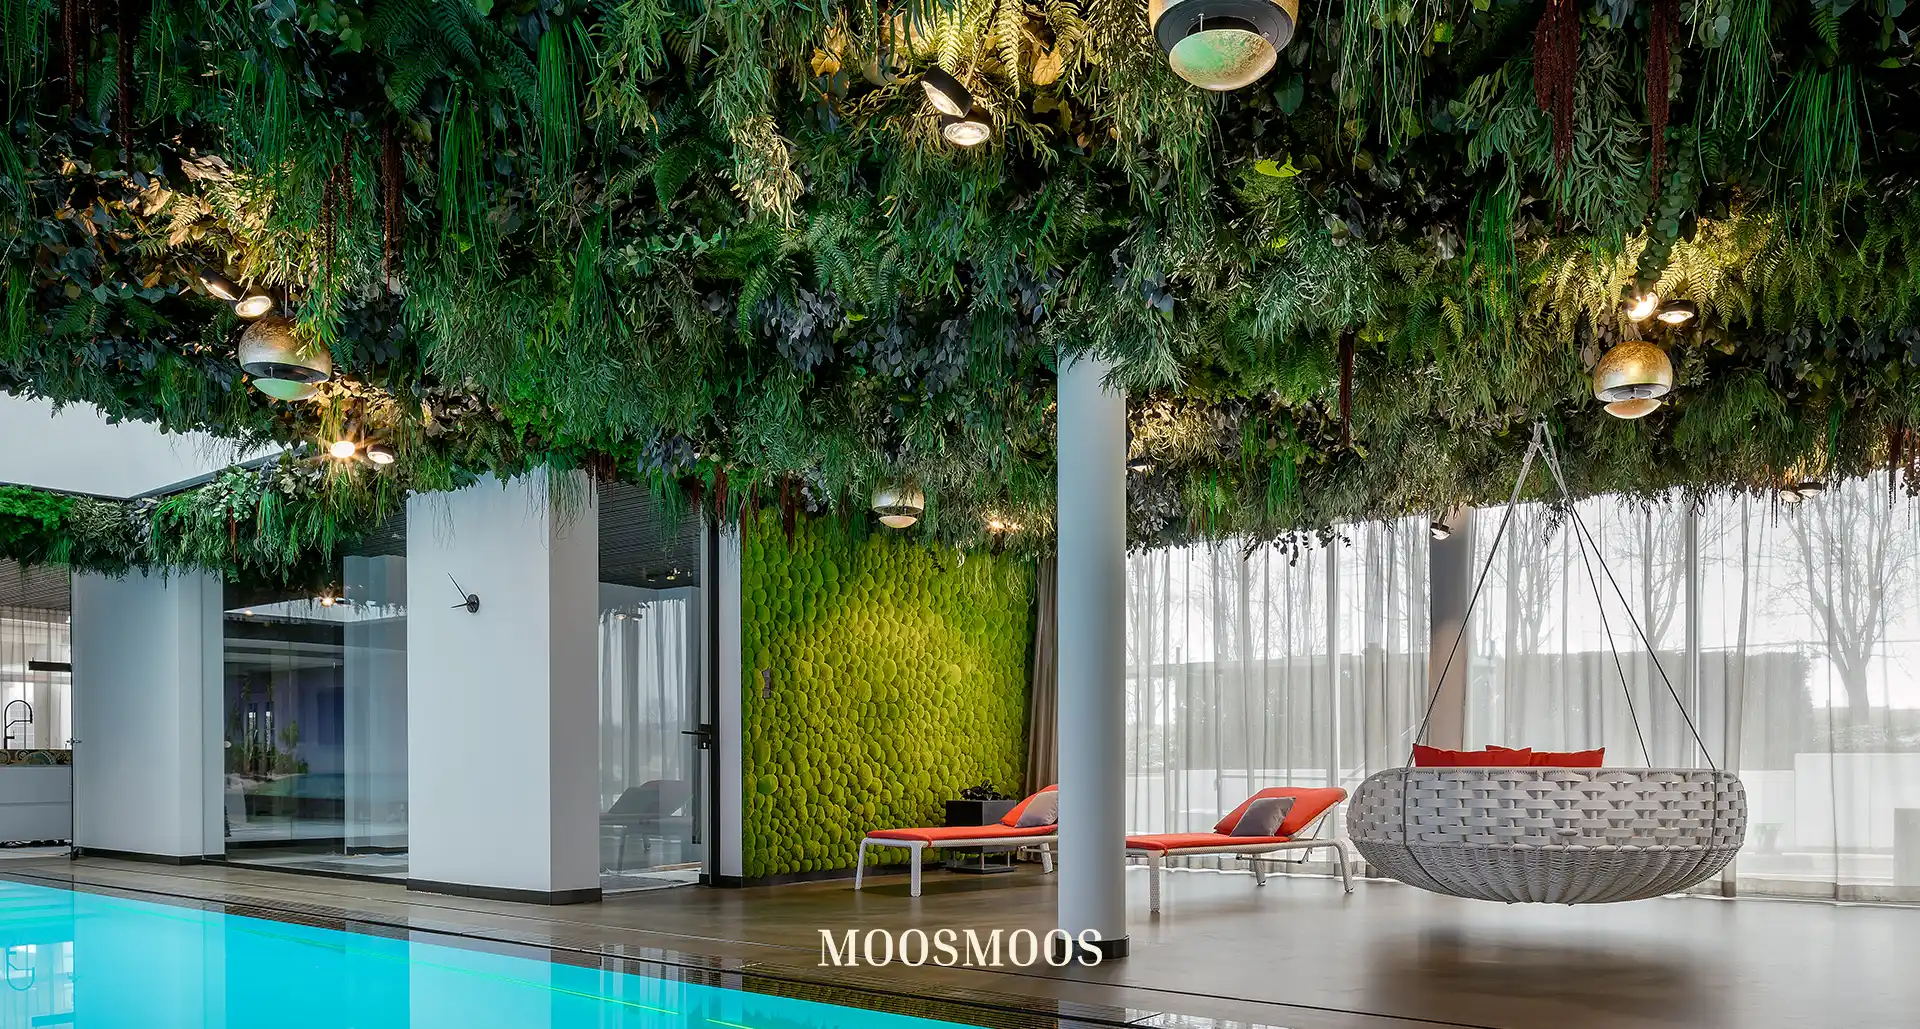 MOOSMOOS Deckenverkleidung / Mooswand an der Decke im Schwimmbad mit Moos und Pflanzen